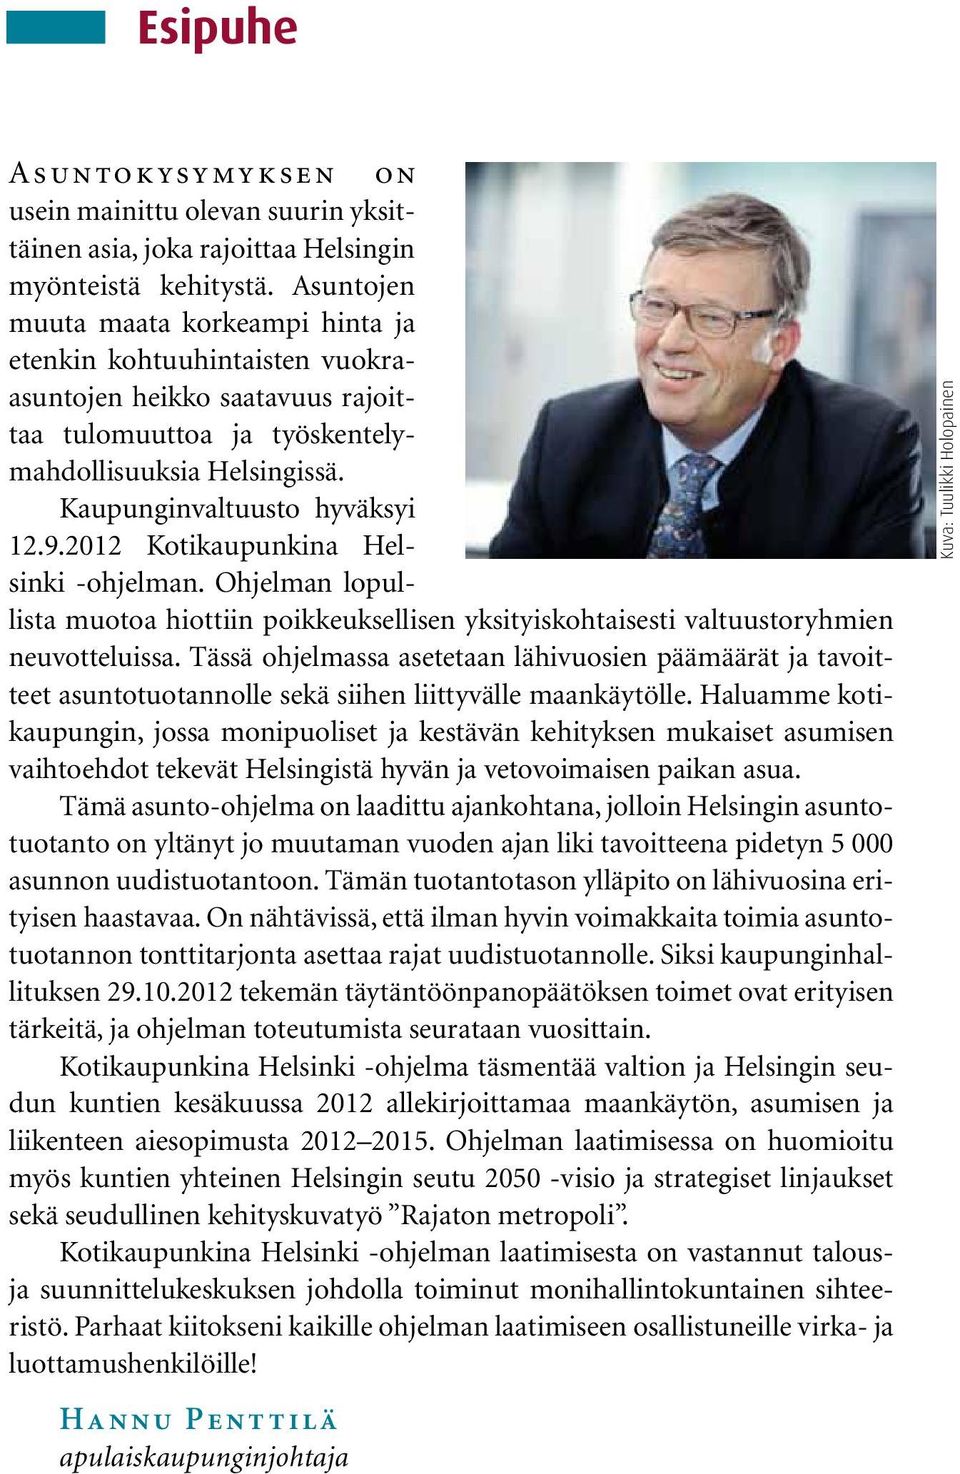 2012 Kotikaupunkina Helsinki -ohjelman. Ohjelman lopullista muotoa hiottiin poikkeuksellisen yksityiskohtaisesti valtuustoryhmien neuvotteluissa.